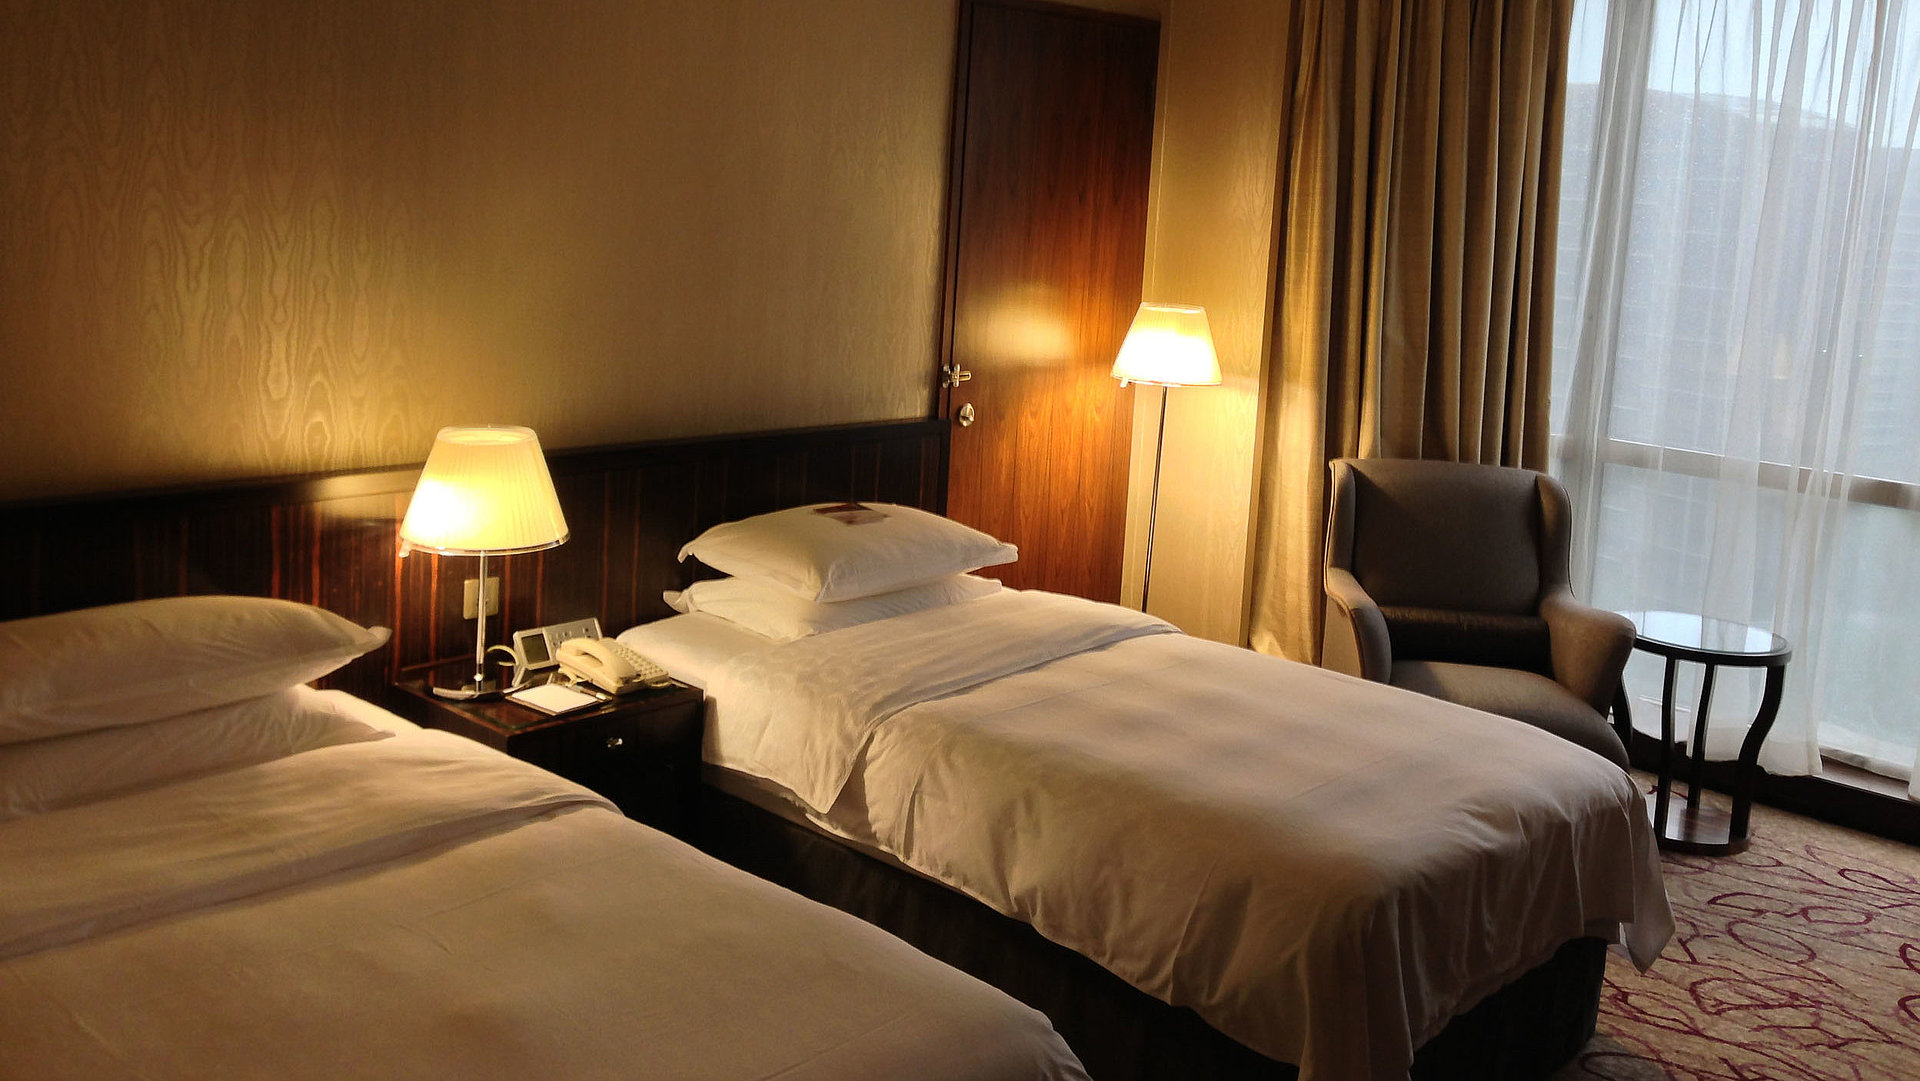 Pauschalangebote für die gesamte Woche für Unterkünfte in der Fränkischen Schweiz - sehr ordentliches Hotelzimmer mit zwei Betten, warmer Nachtlampe und Gardinen